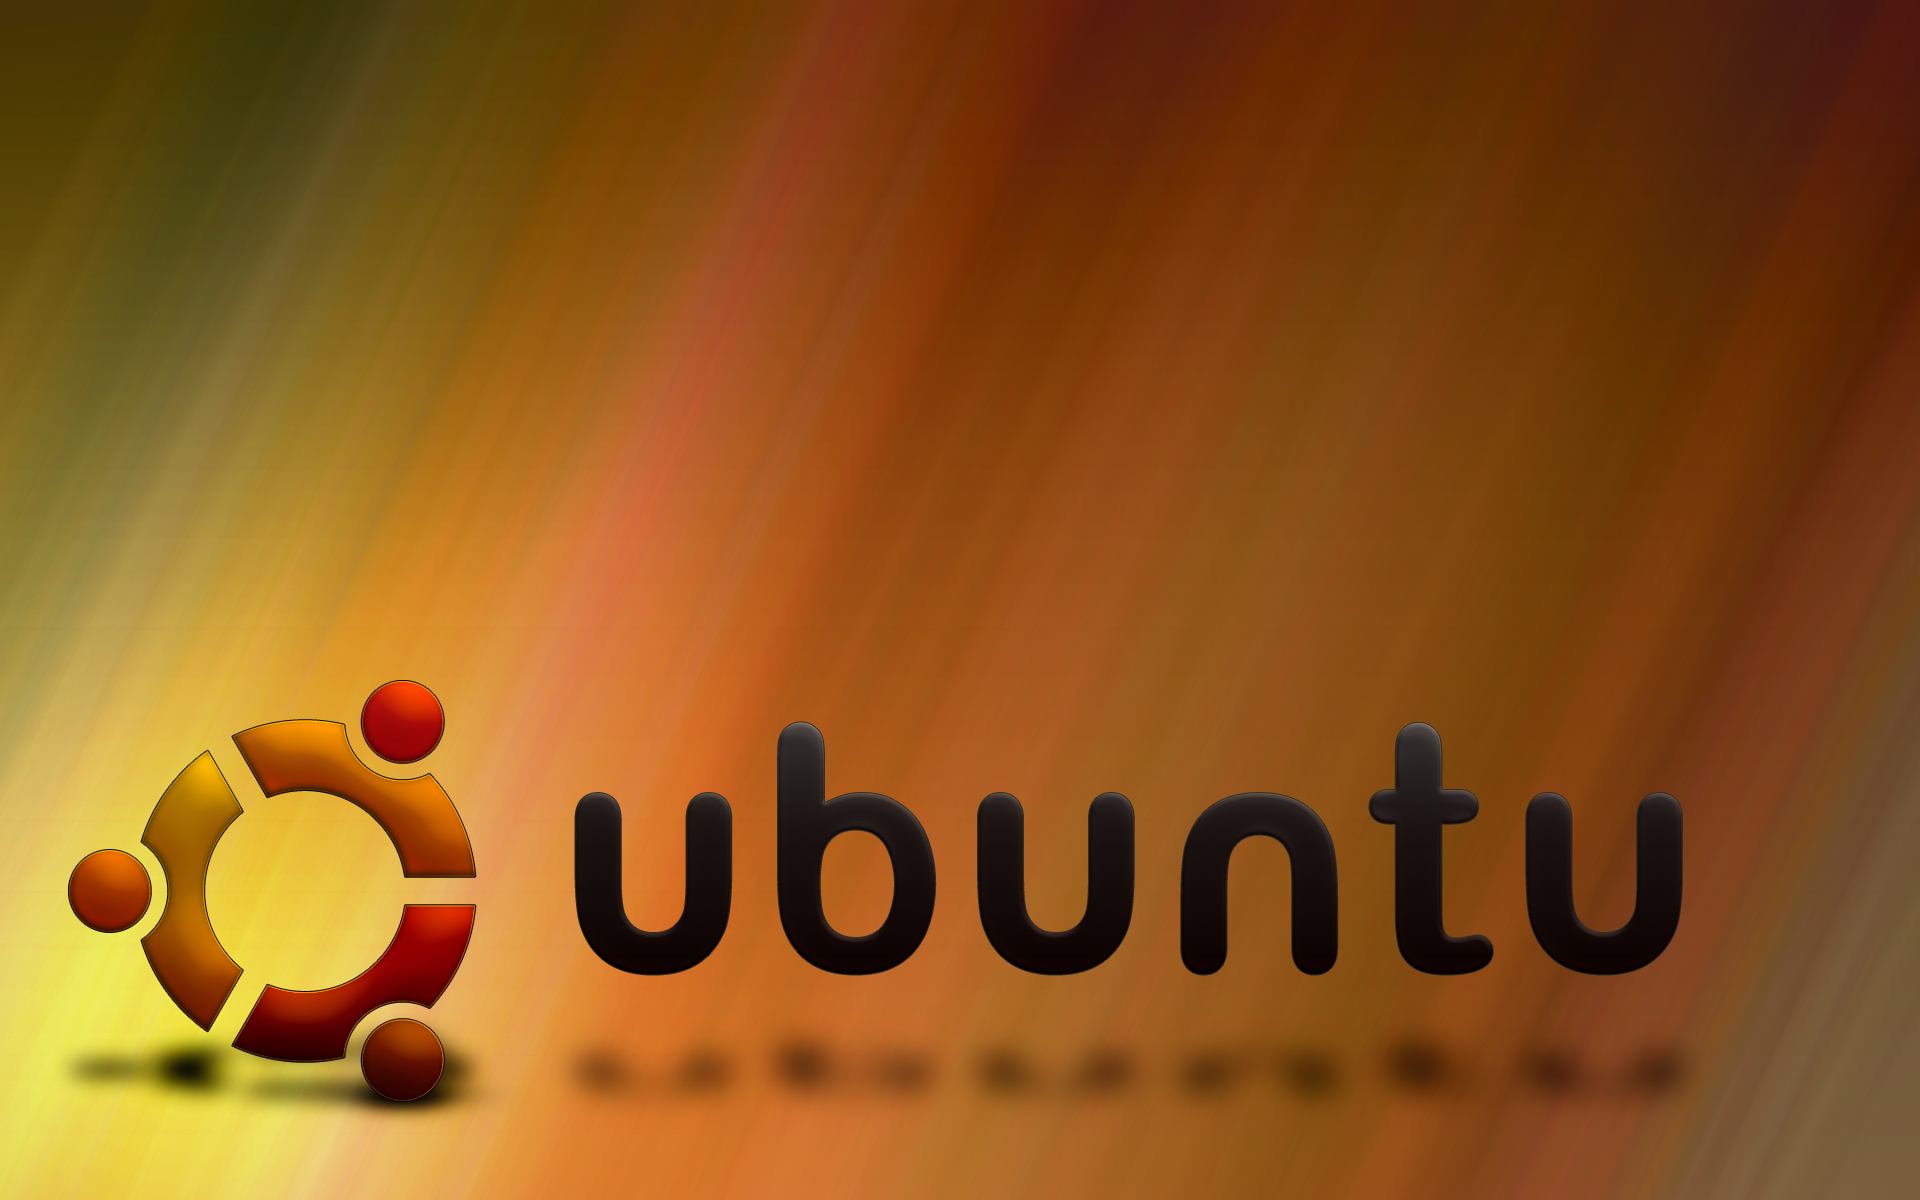 ubuntuの壁紙,テキスト,フォント,グラフィックス,マクロ撮影,グラフィックデザイン